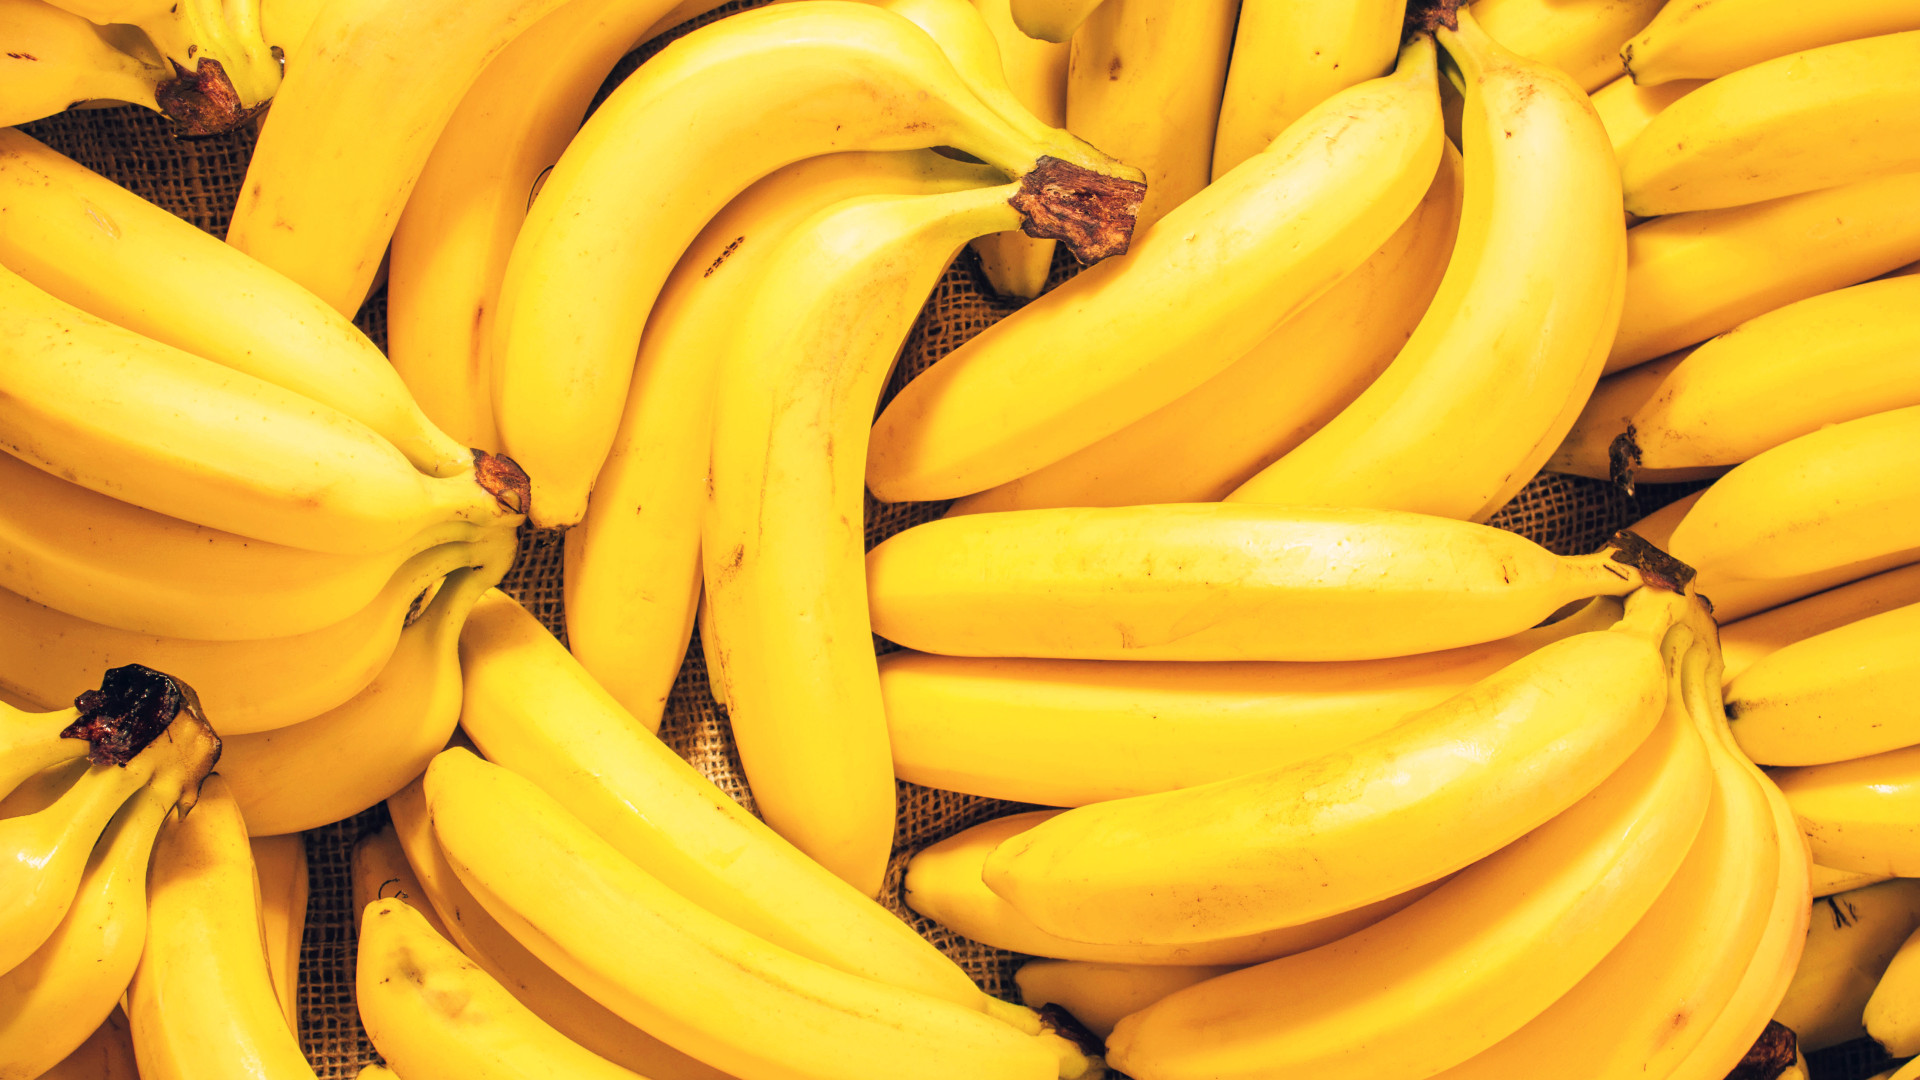  Sanje o zreli banani: kakšni so pomeni, simbolika in duhovnost?